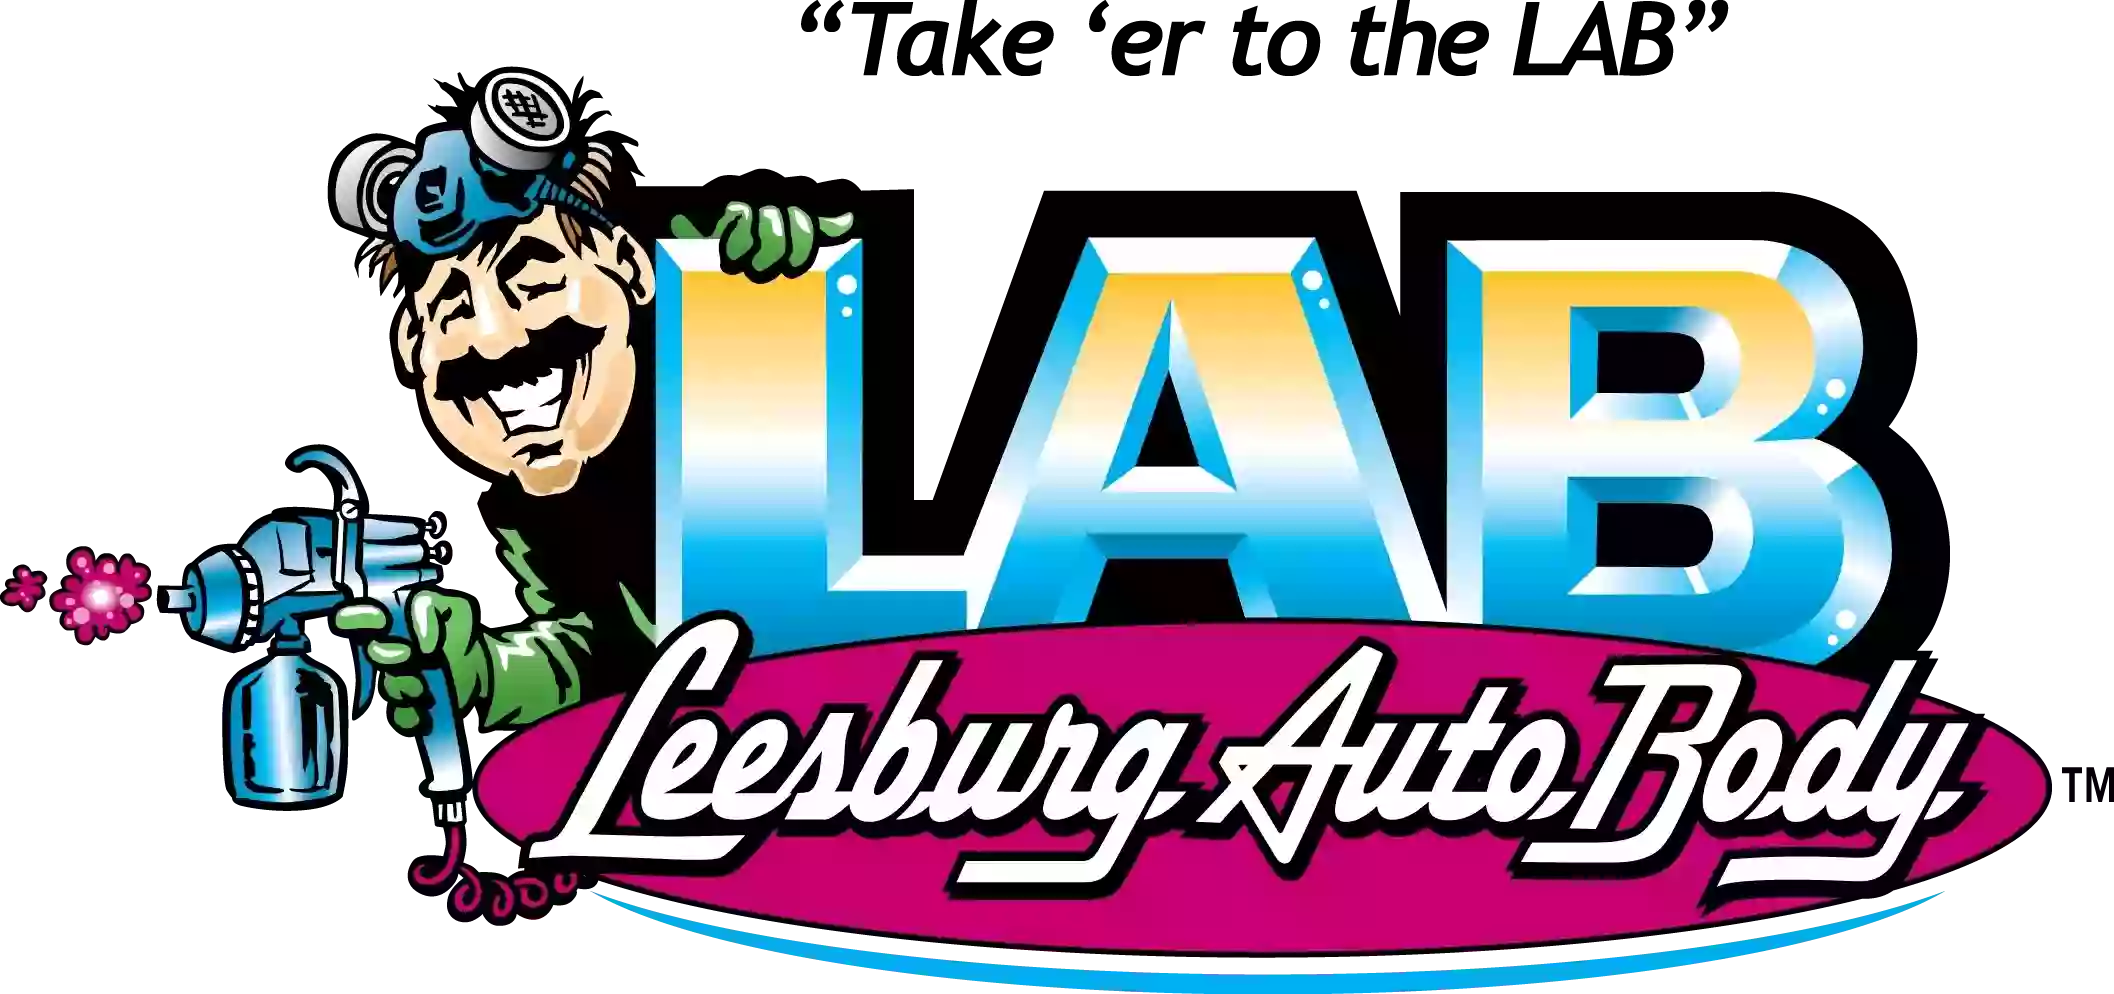 Leesburg Auto Body